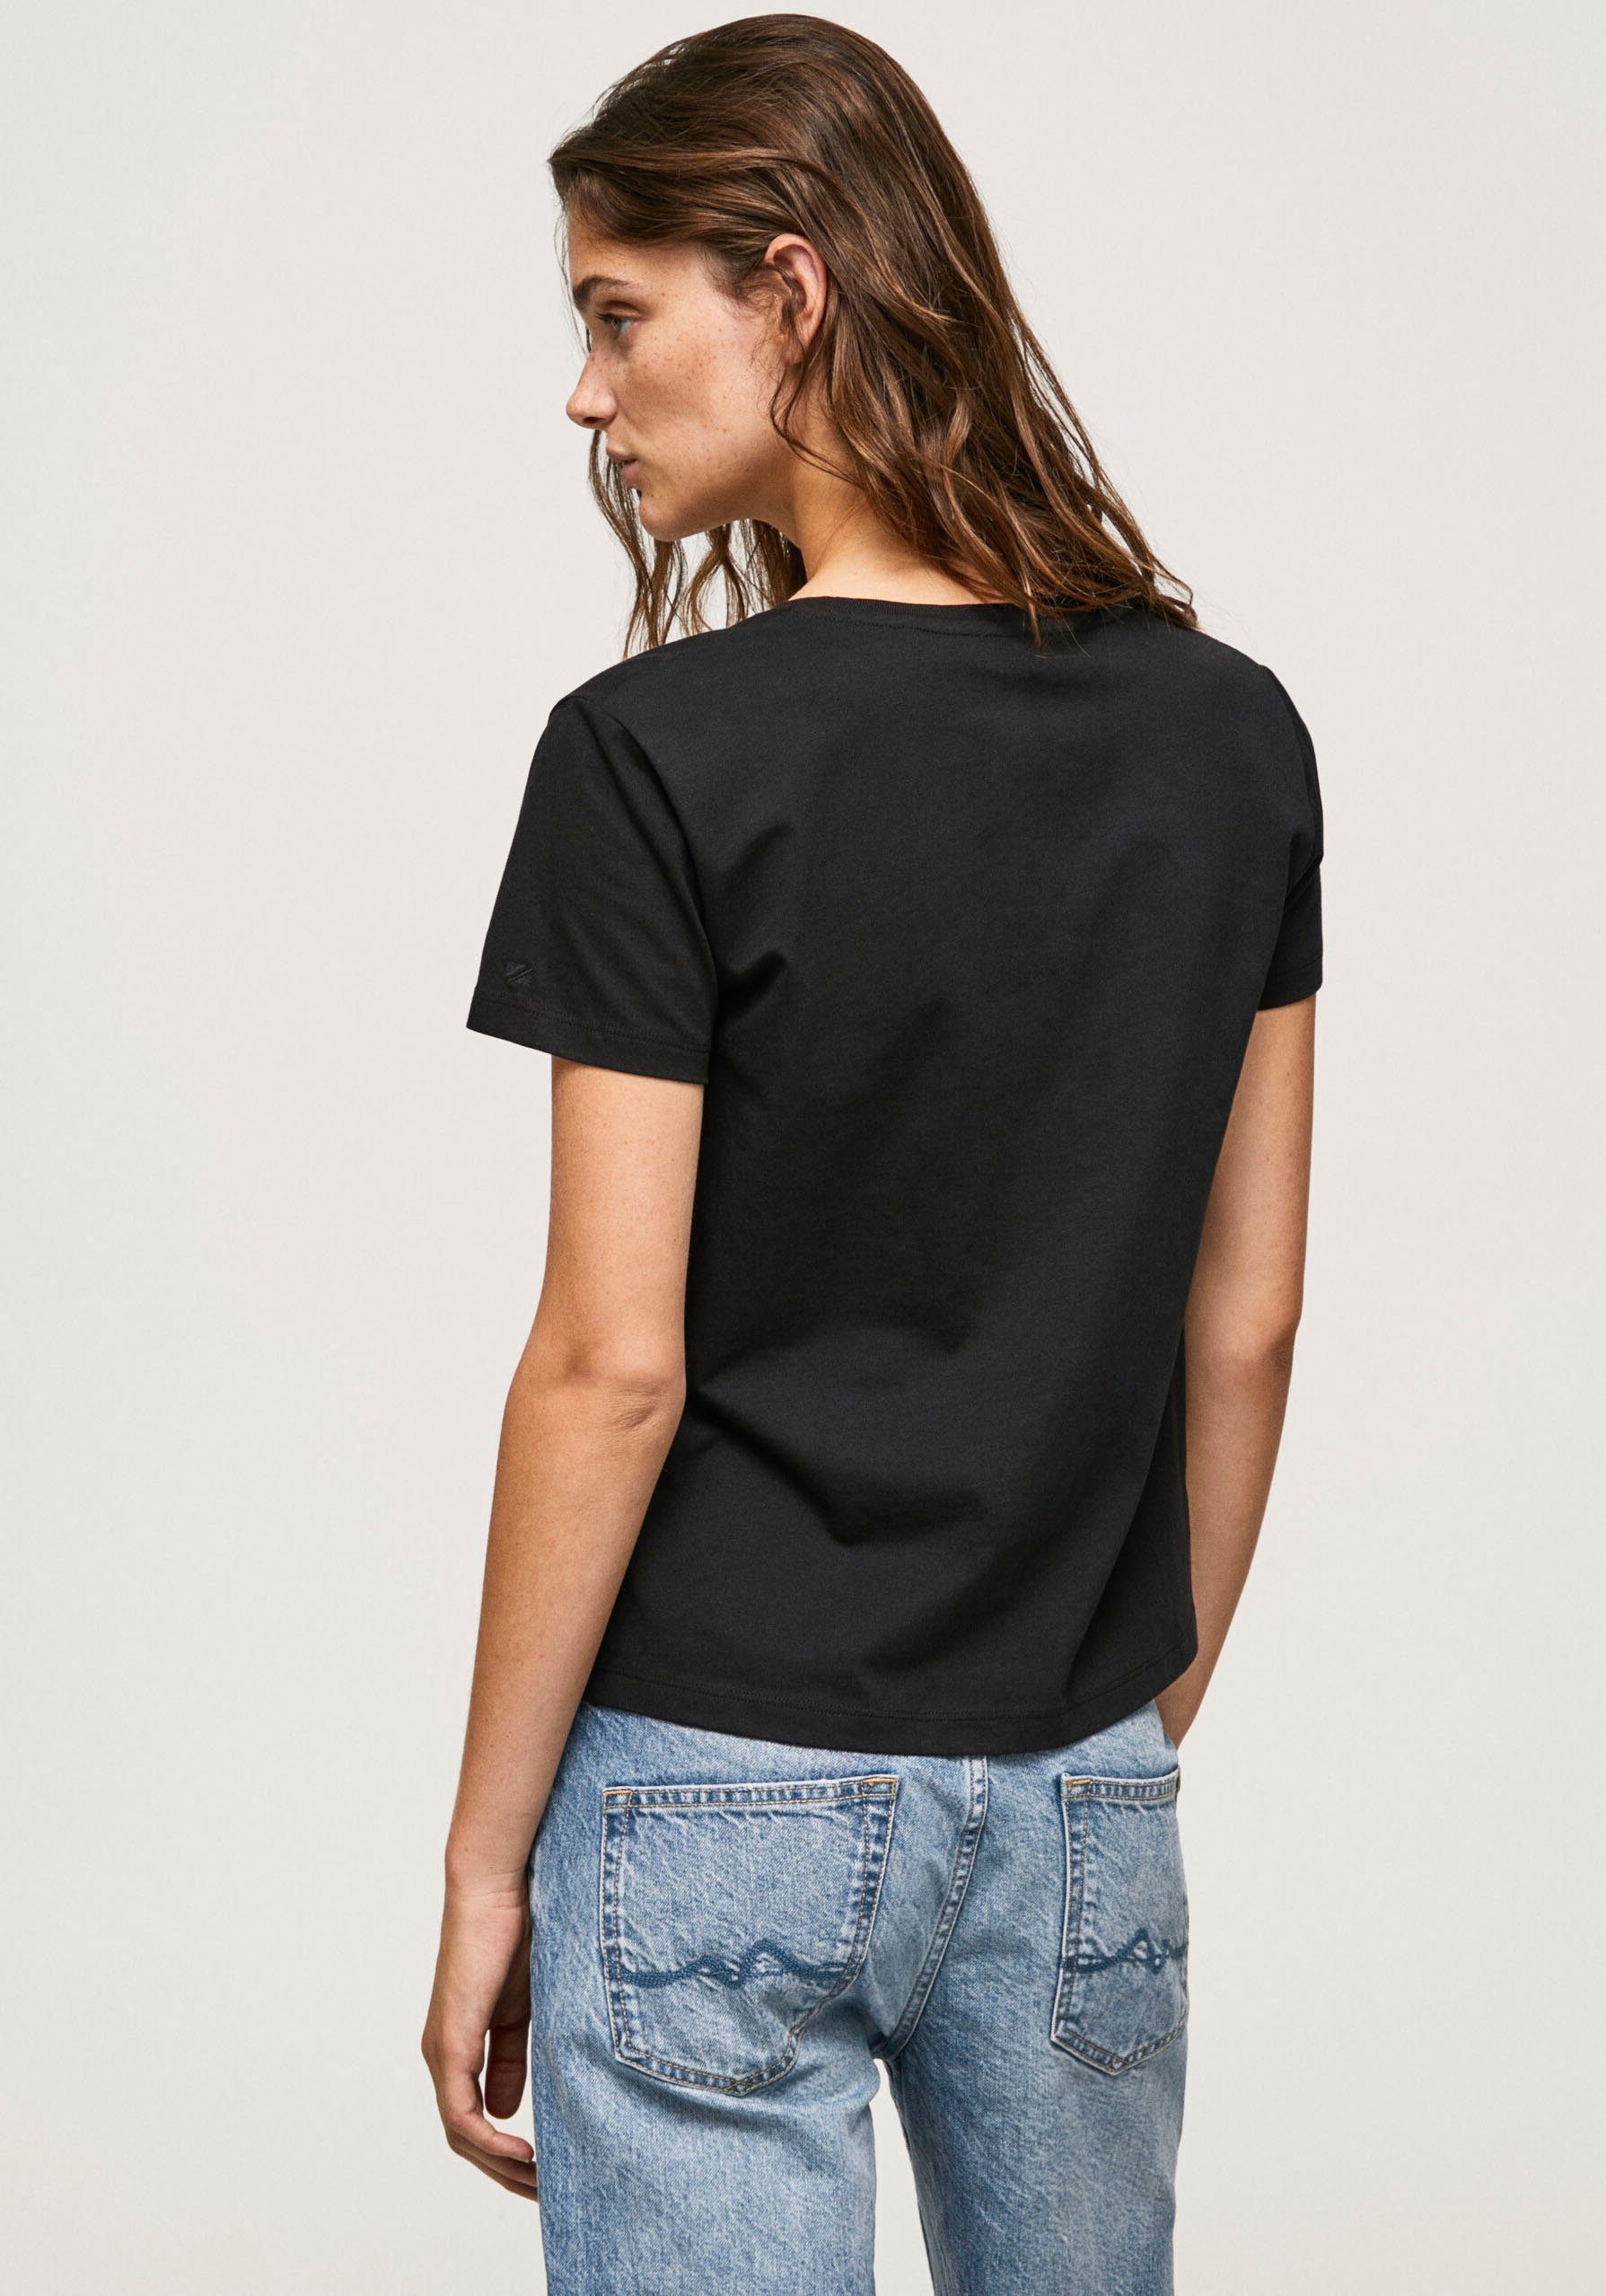 Jeans Pepe T-Shirt black Lali